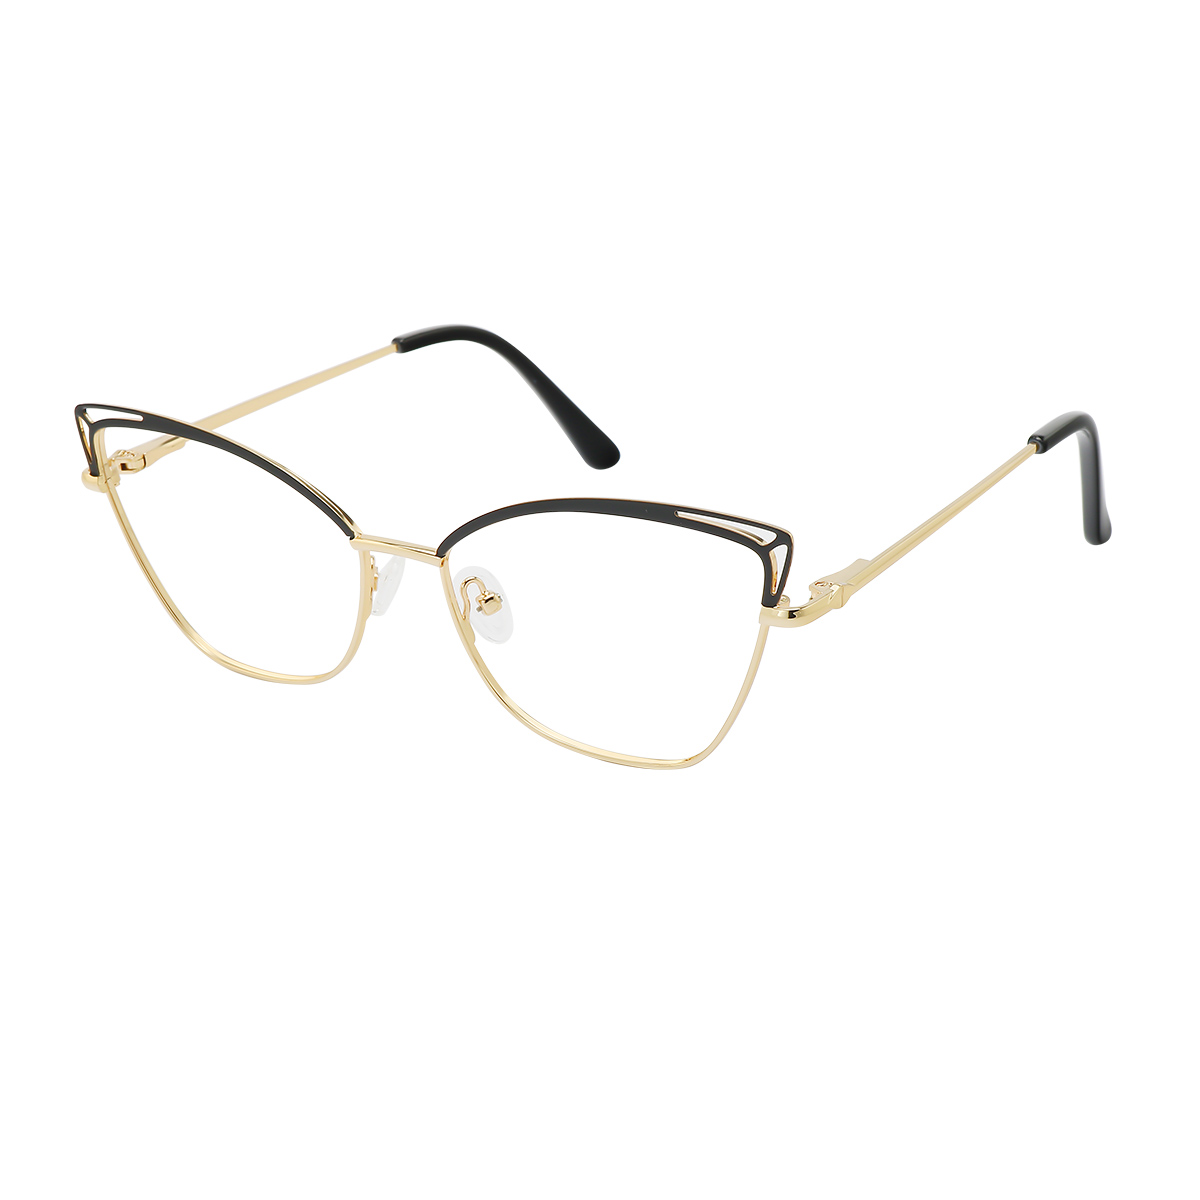 Ellen - Cat-eye Black/Gold Reading Glasses for Women